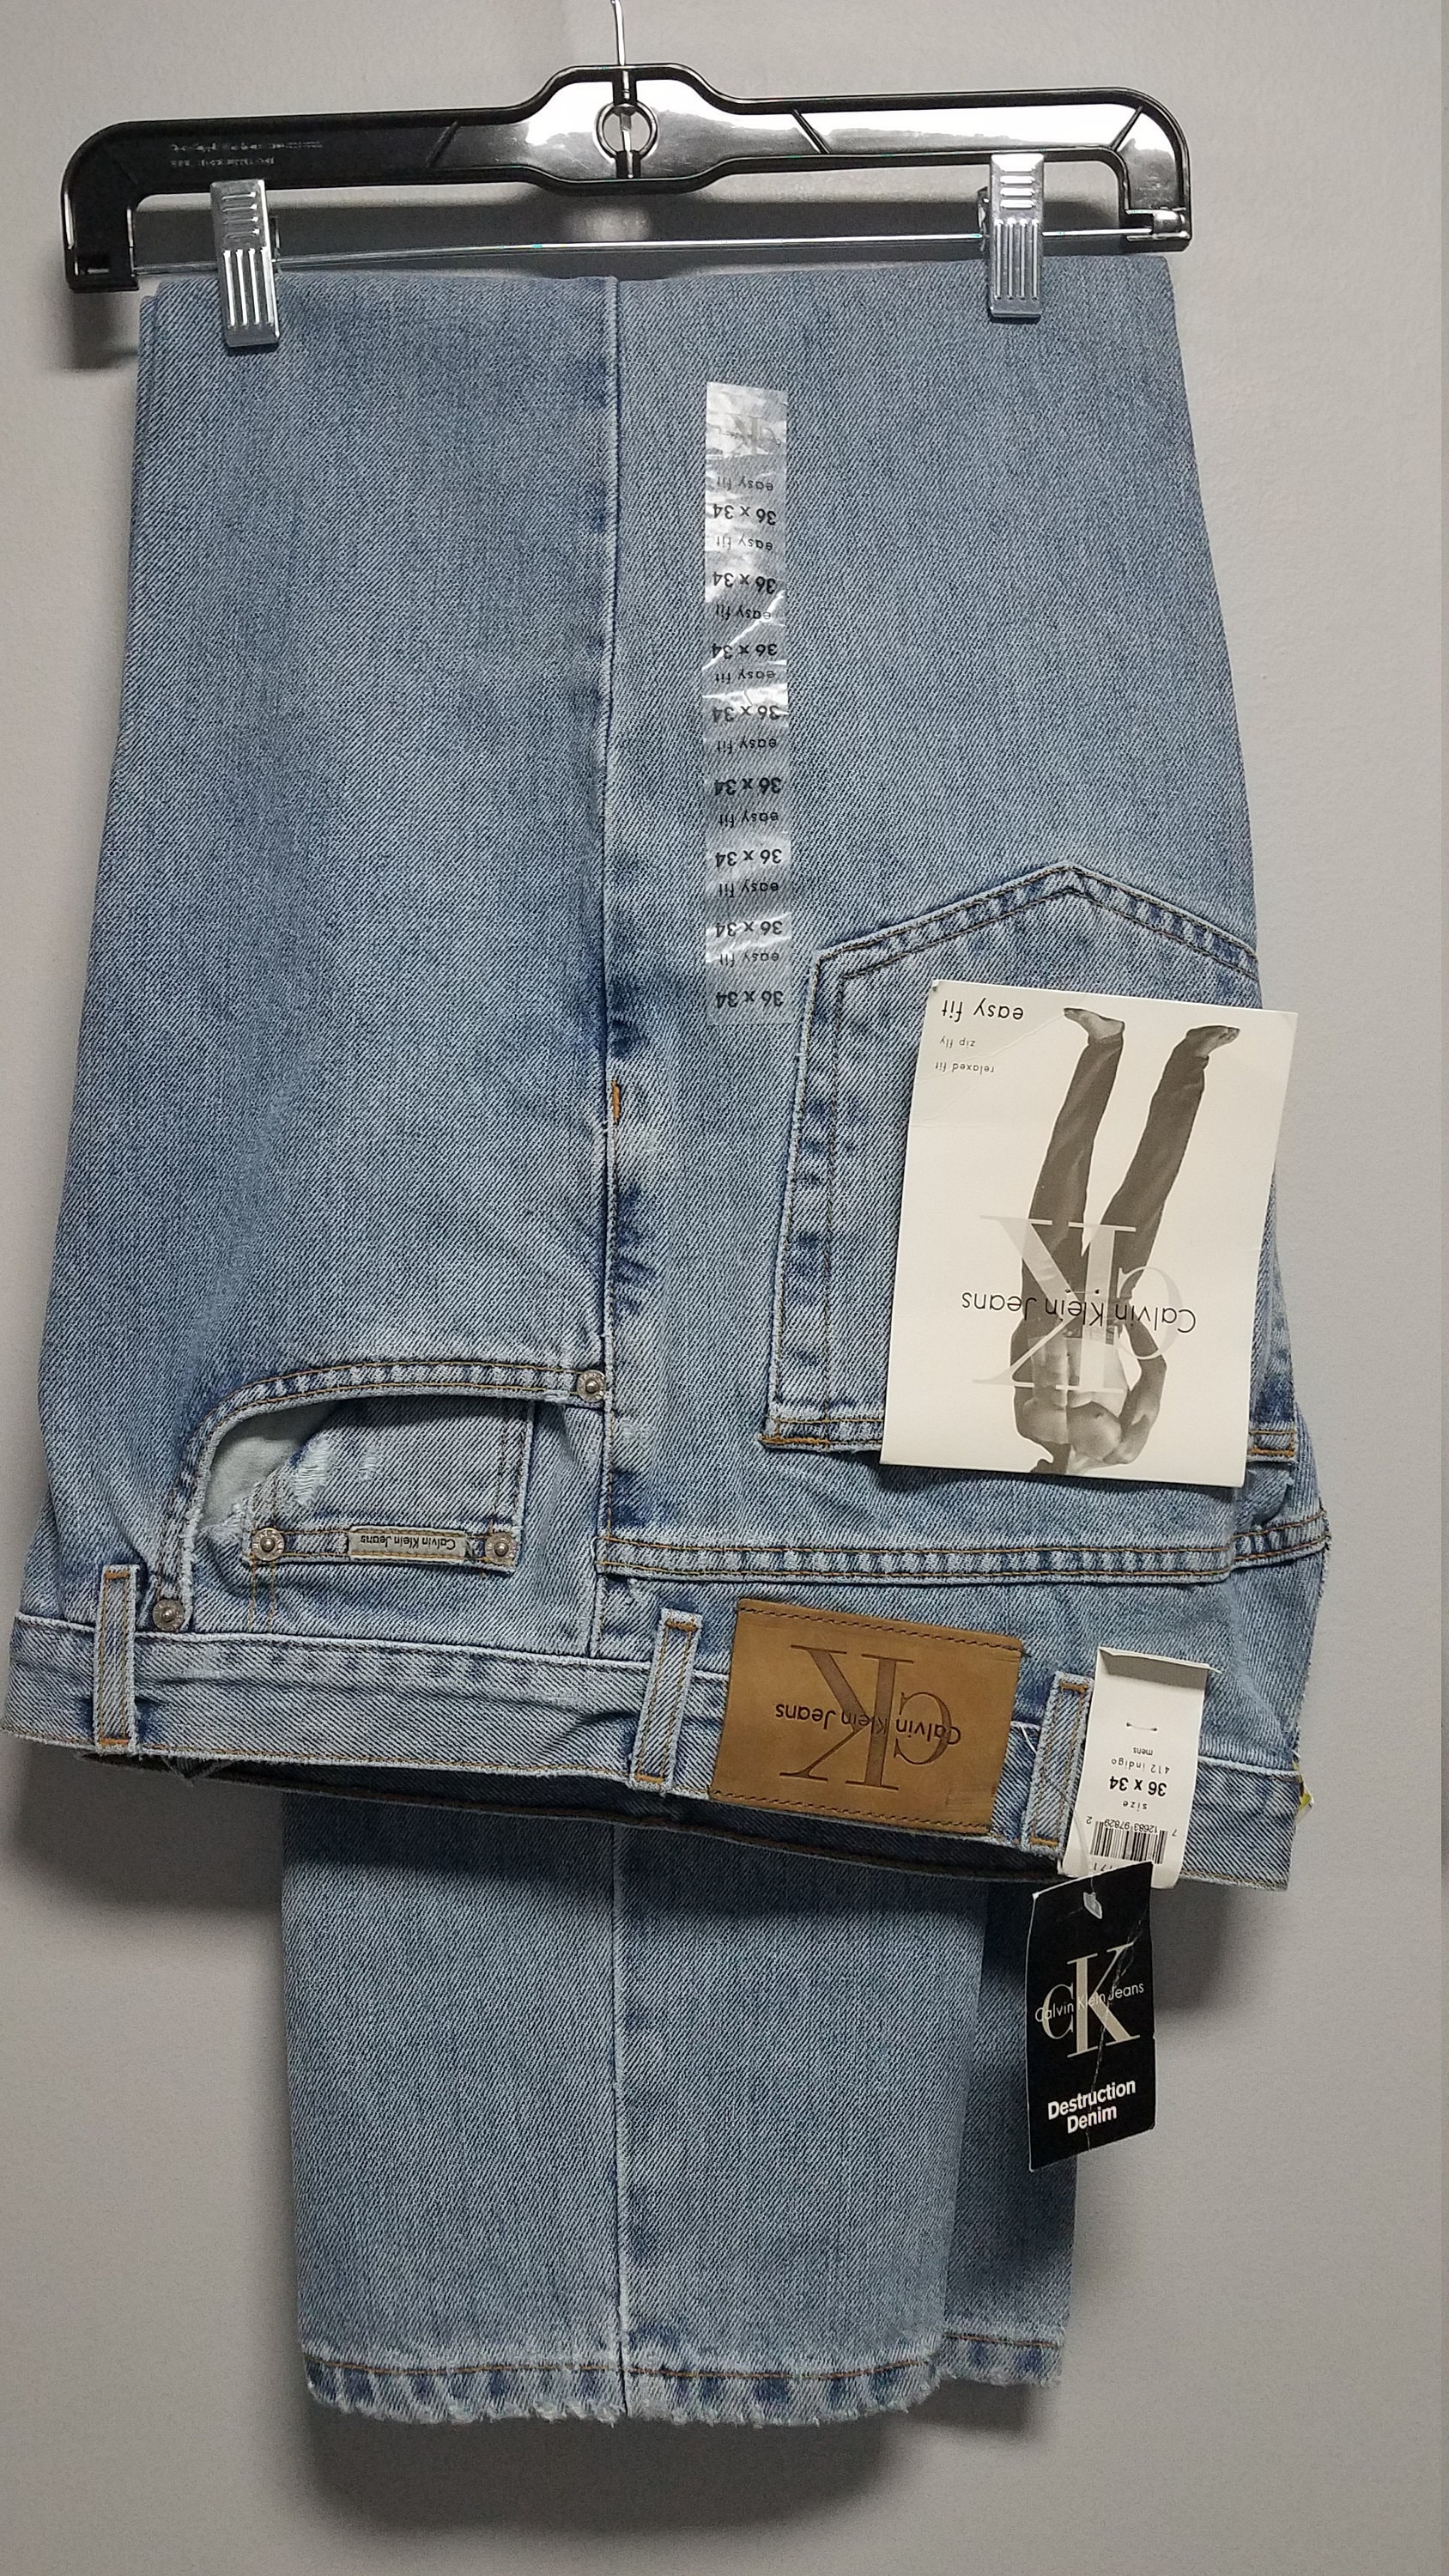 Snikken Egyptische Darmen CALVIN KLEIN Vintage Jeans All Tags Still On - Etsy